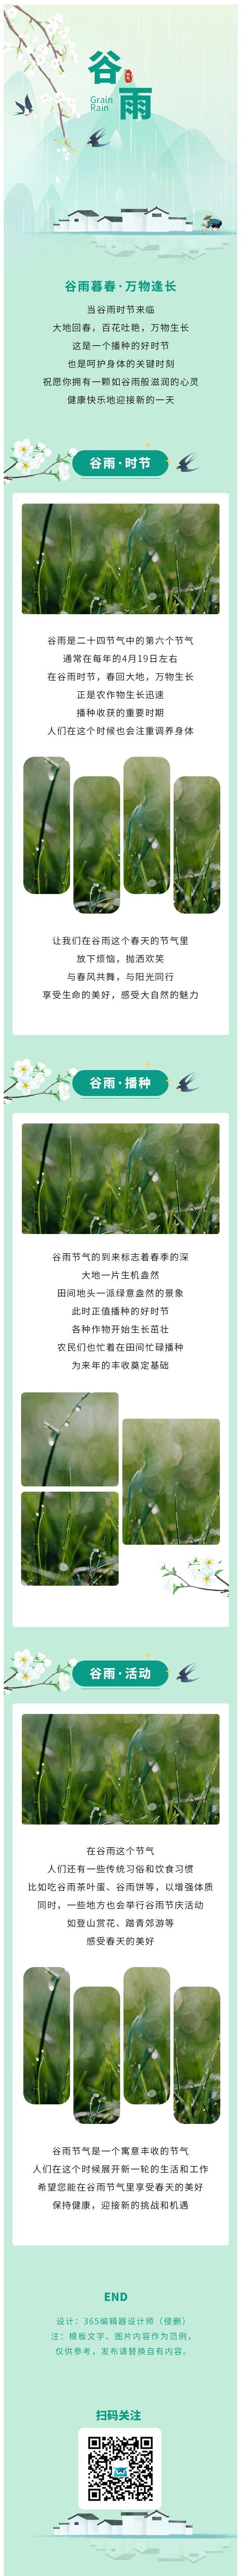 谷雨节气传统节日节气习俗二十四节气古风绿色